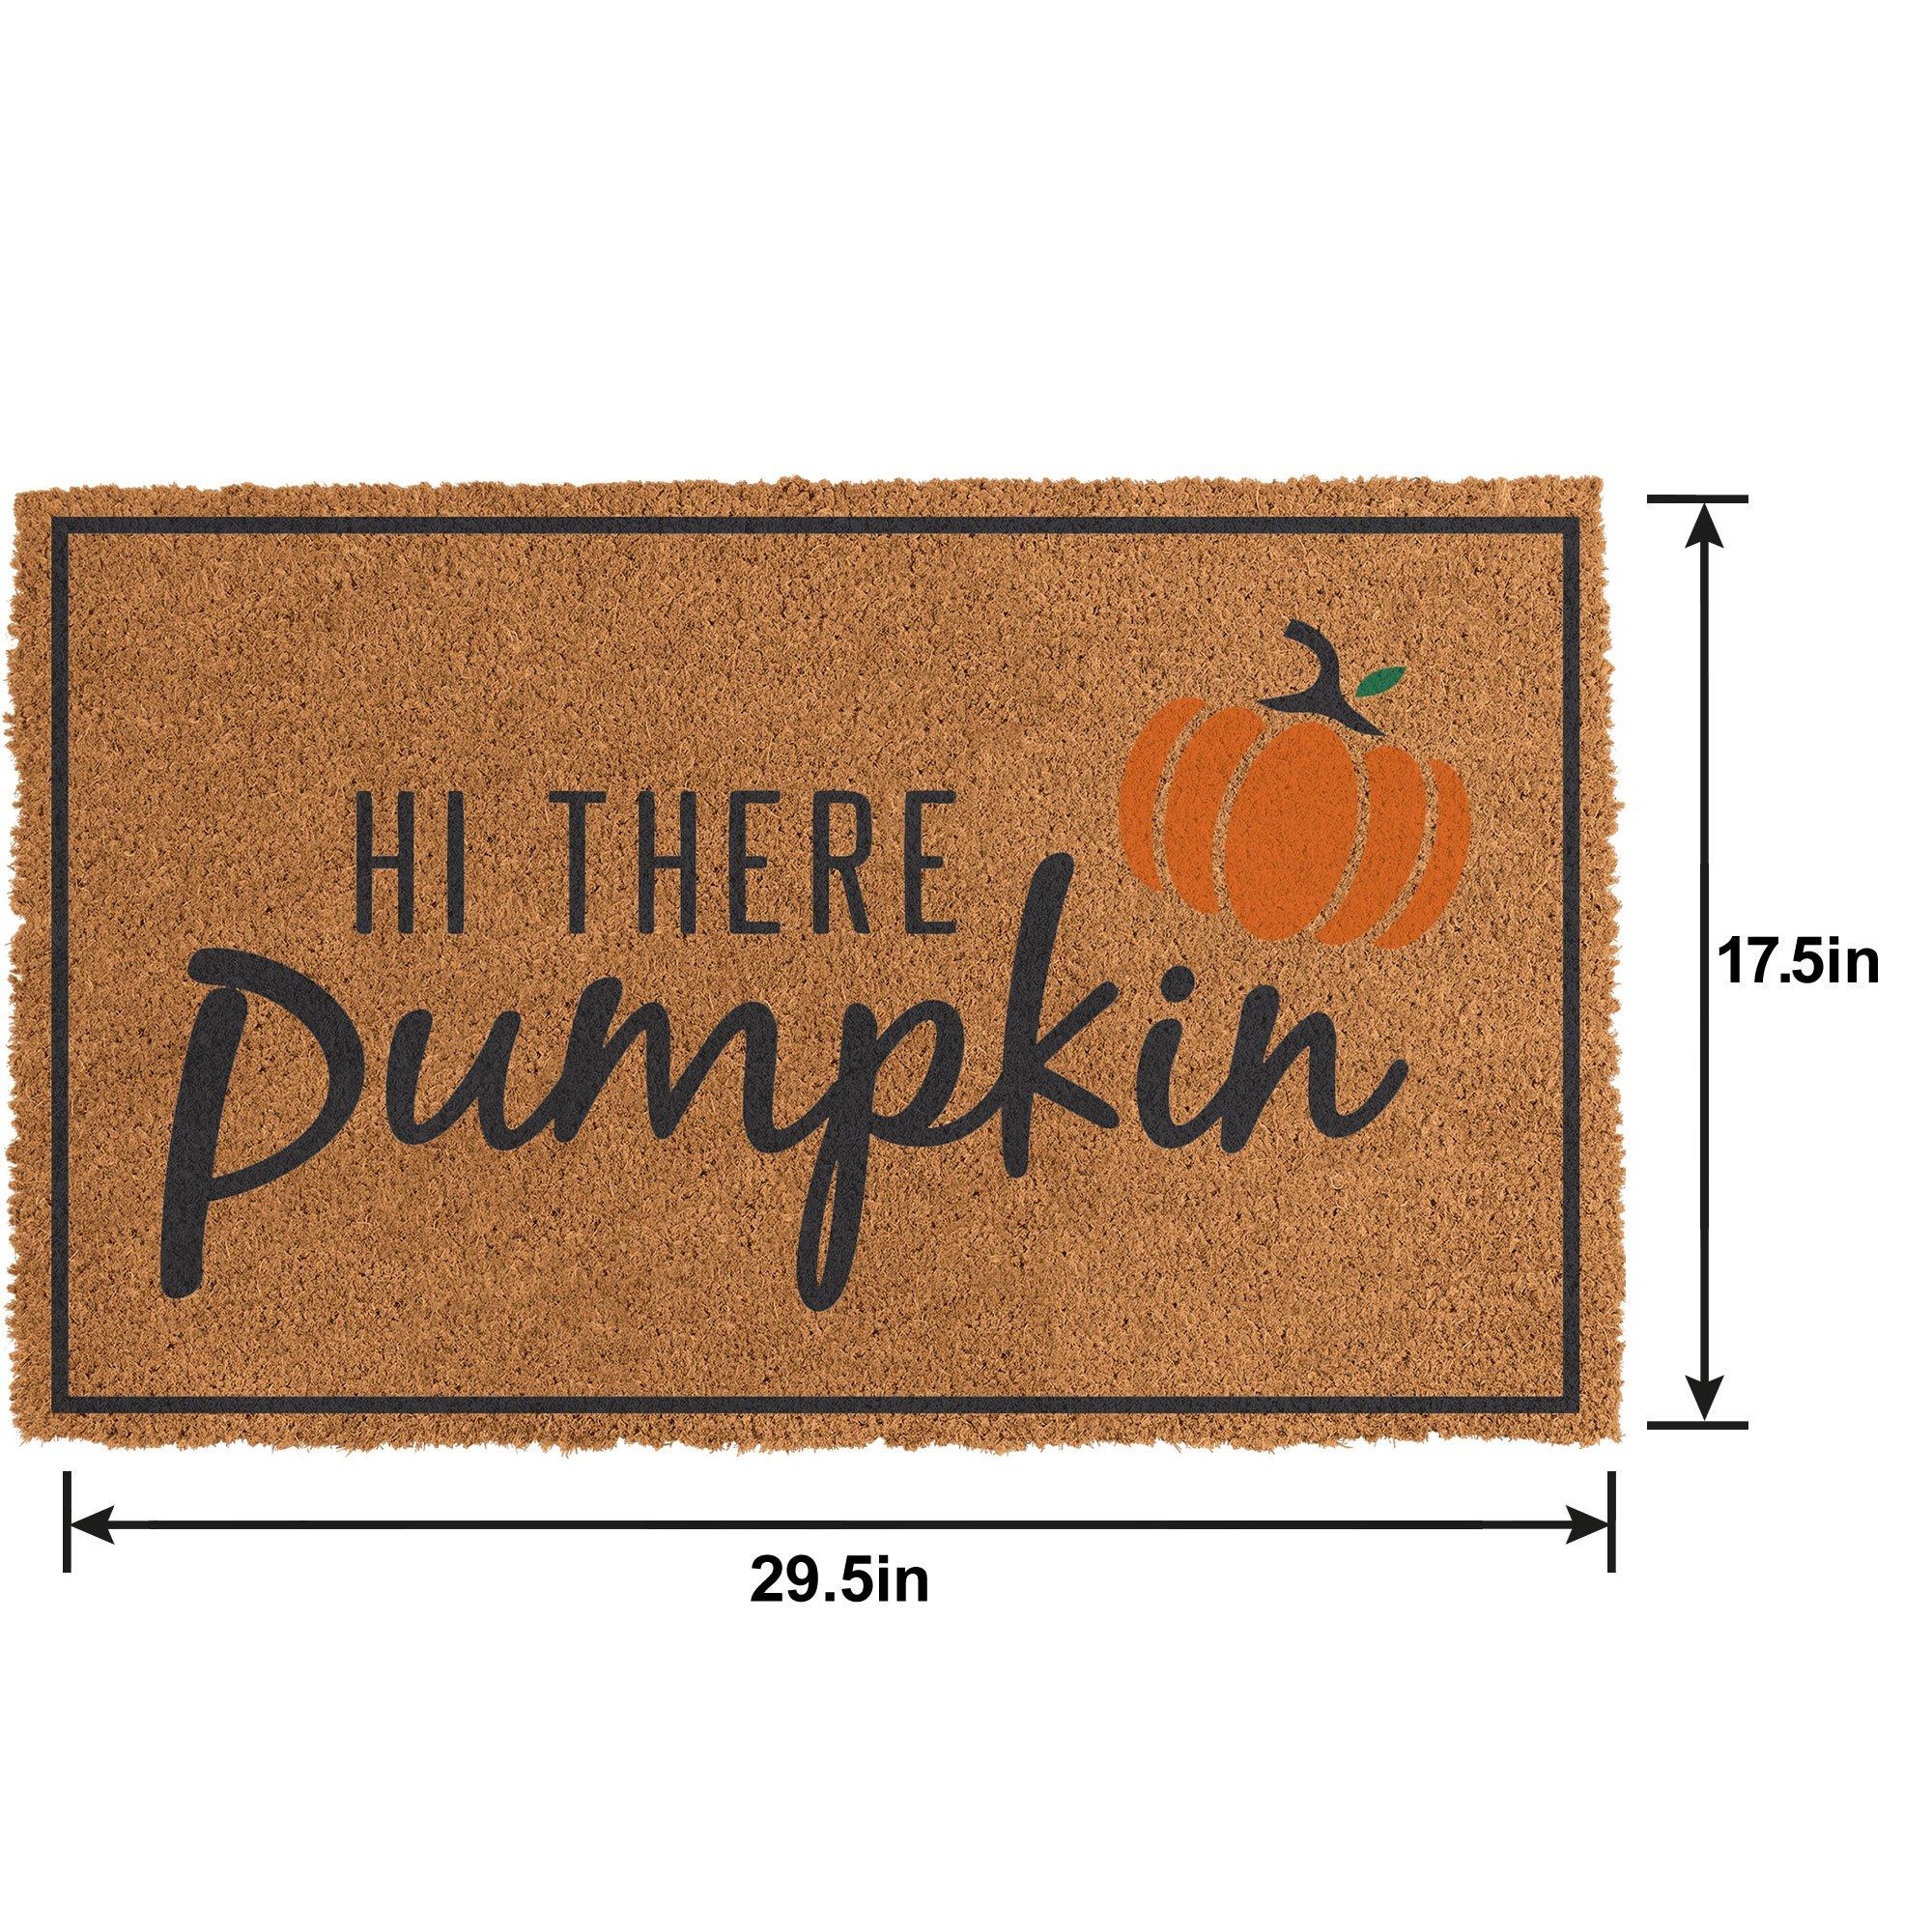 Hi There Pumpkin Coir Doormat, 17.7in x 29.5in